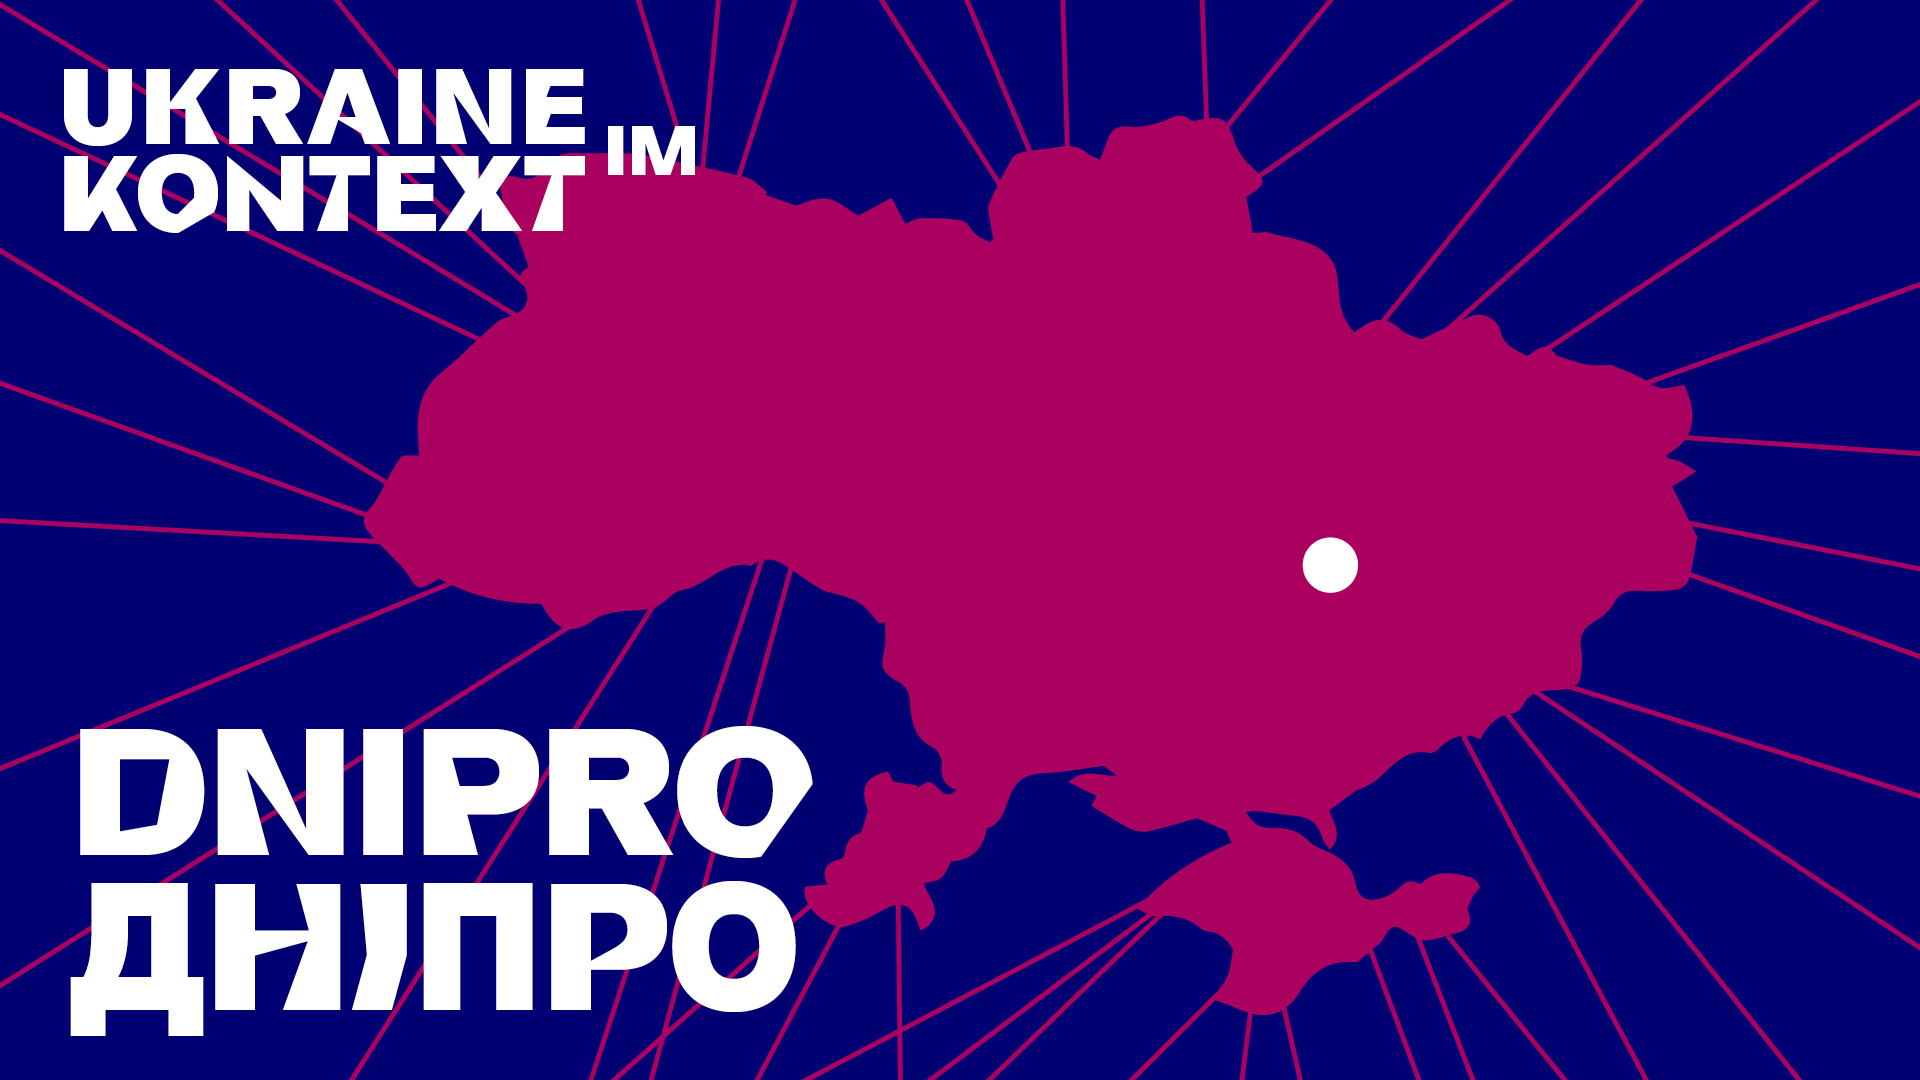 Visual: Die Umrisse der Ukraine in berry auf blauem Grund, darin der Text: Ukraine im Kontext: Dnipro.